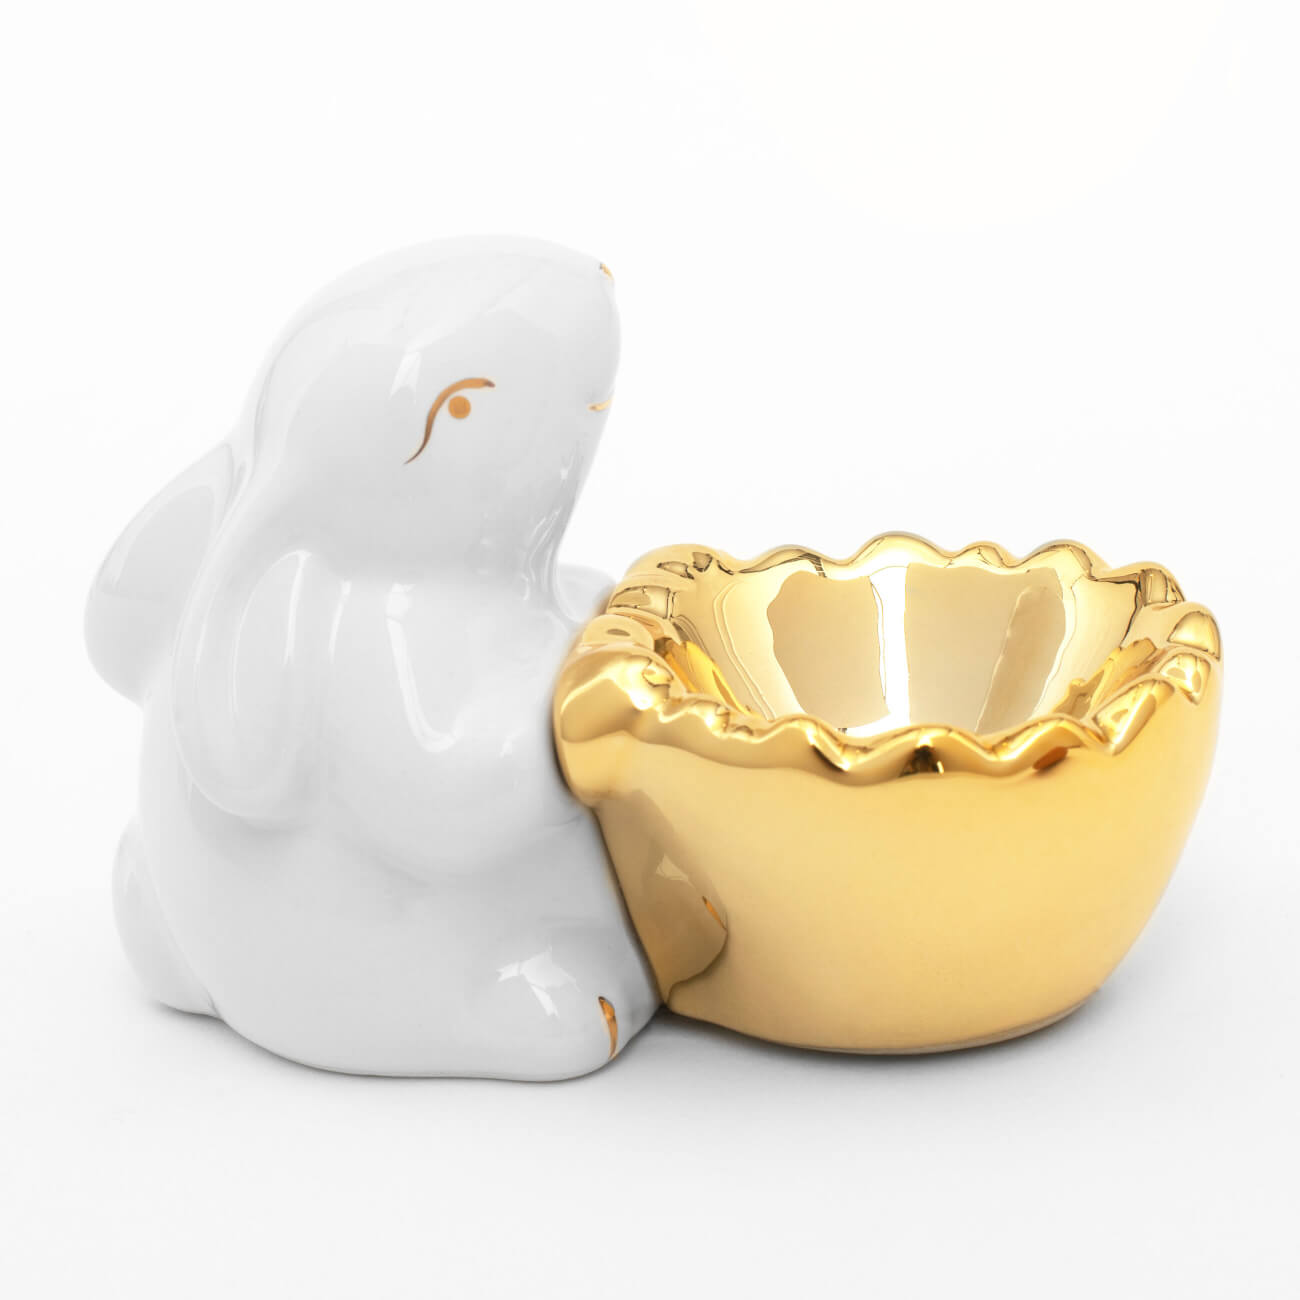 Подставка для яйца, 11 см, керамика, бело-золотистая, Кролик со скорлупой, Easter gold - фото 1